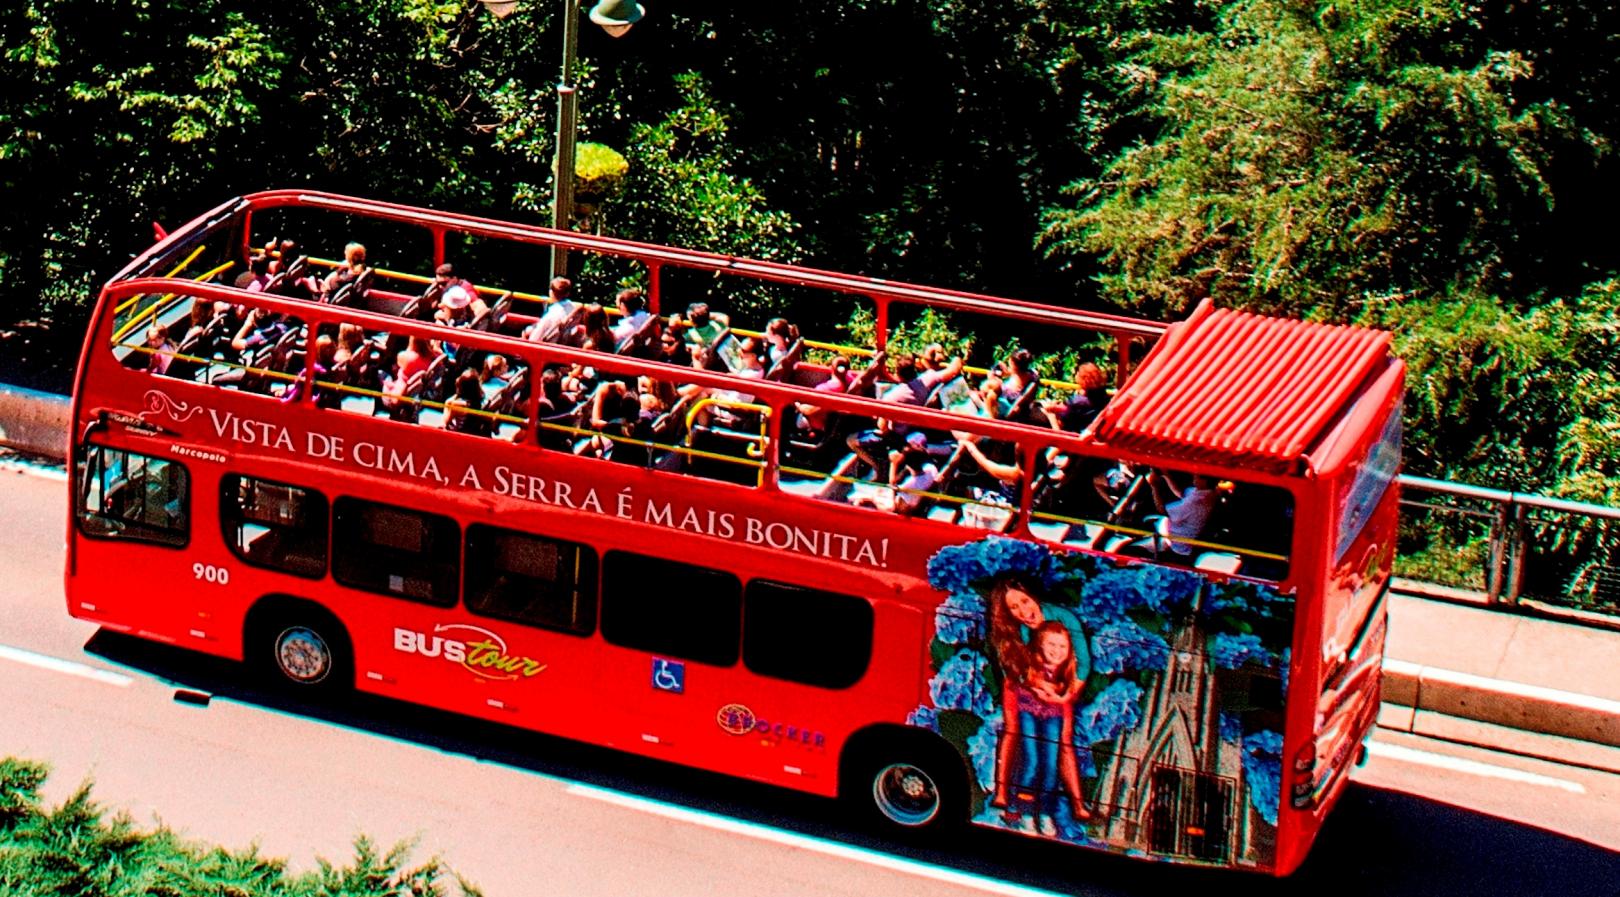 BusTour: Ônibus turístico em Gramado e Canela! - TurismoETC